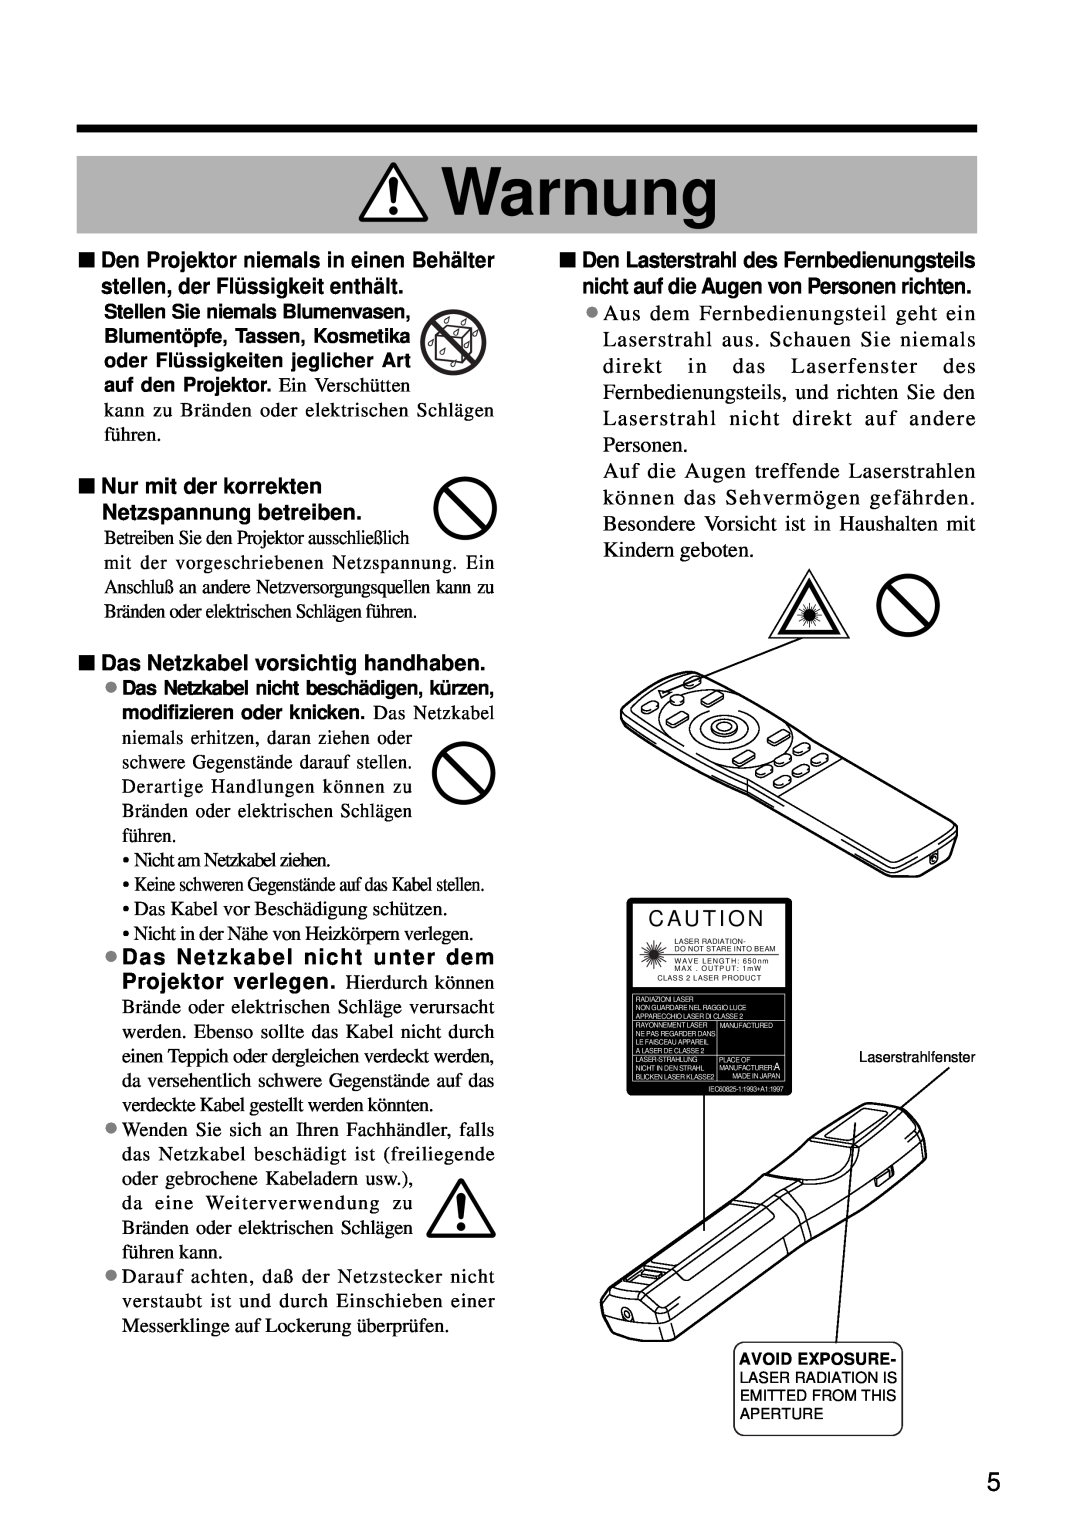 Hitachi CP-S860W user manual Nur mit der korrekten Netzspannung betreiben, Das Netzkabel vorsichtig handhaben, Warnung 